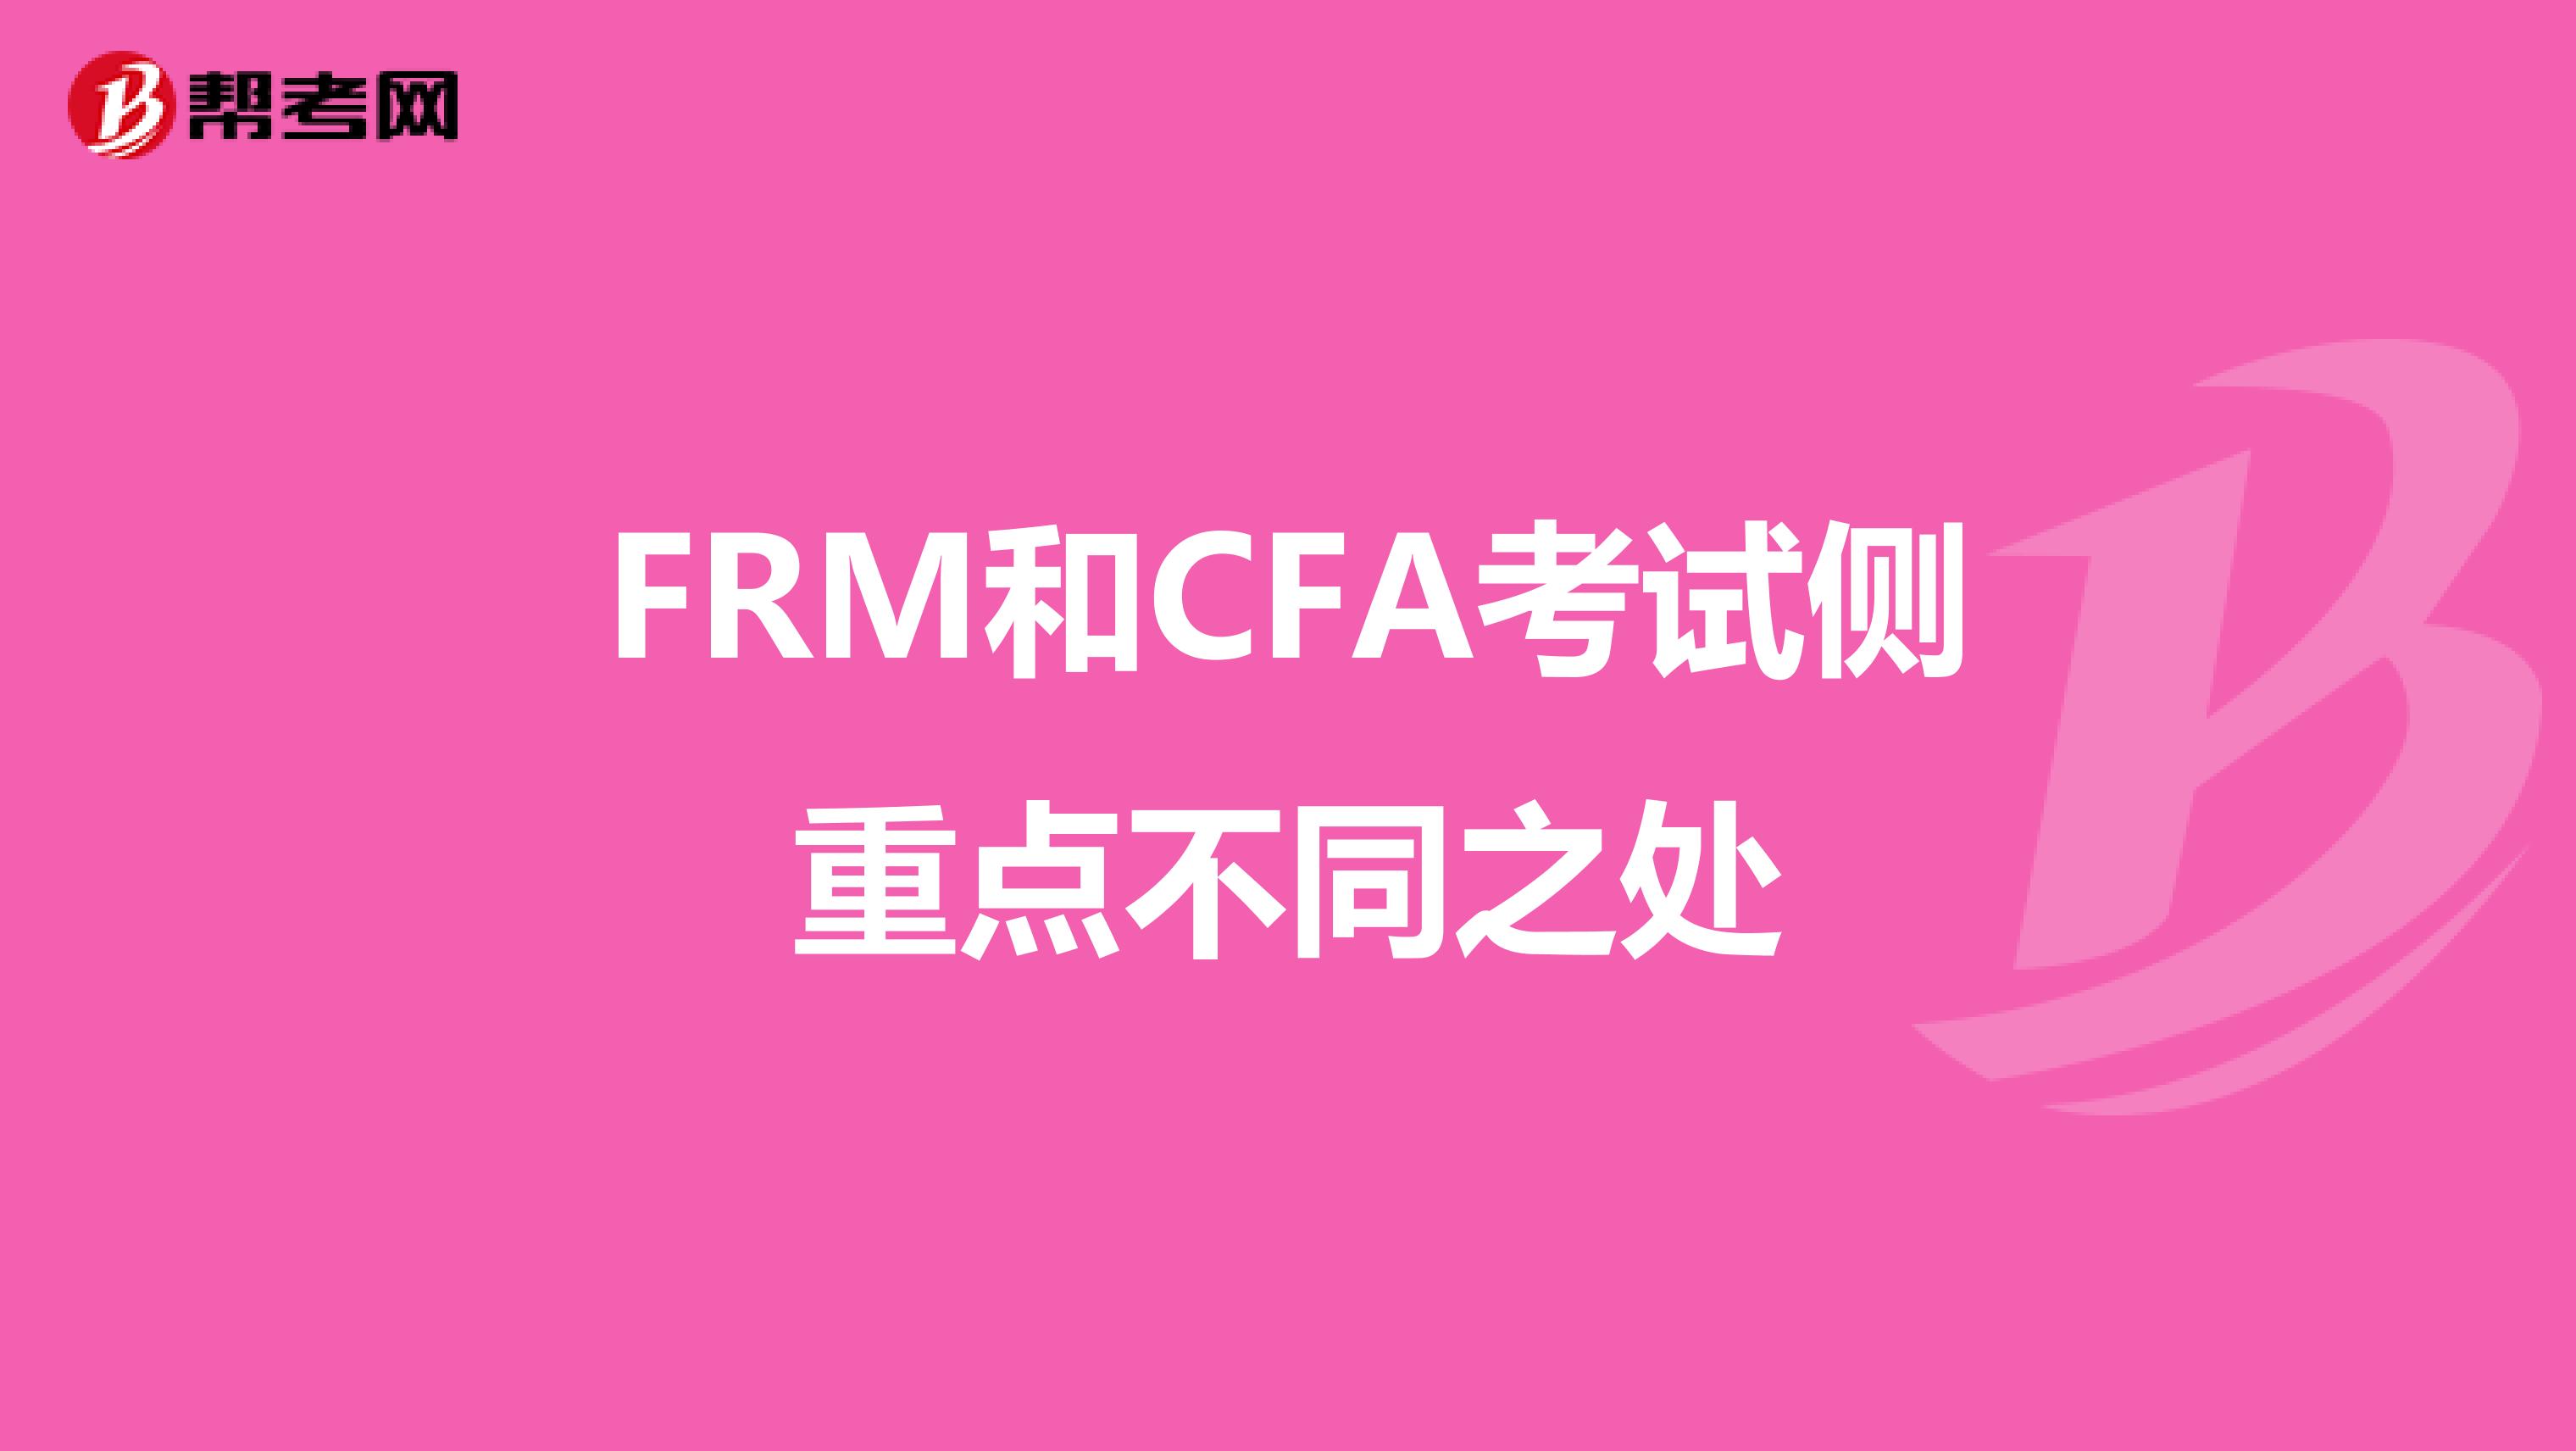 FRM和CFA考试侧重点不同之处